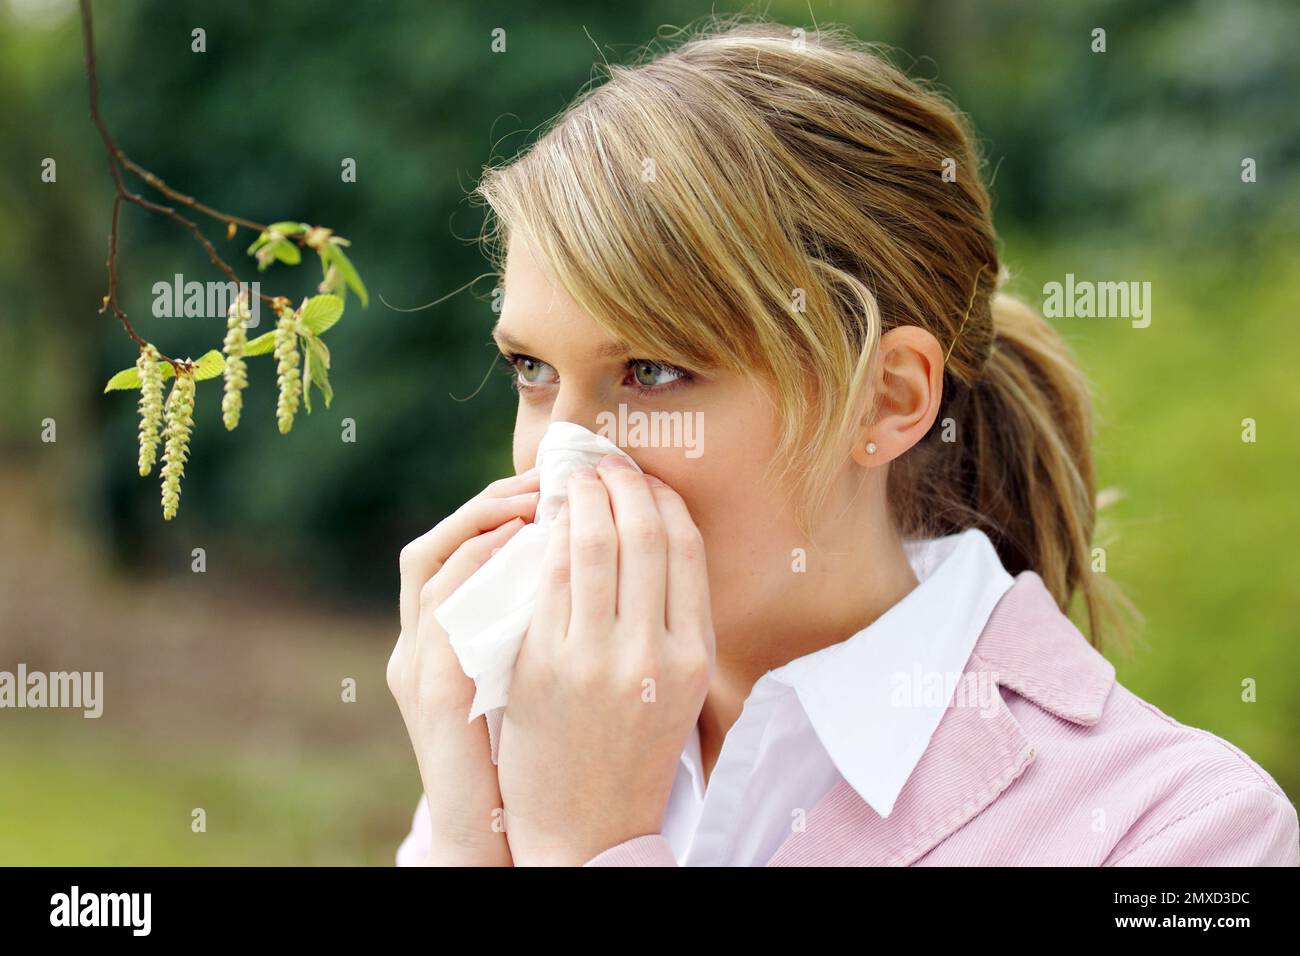 Carpino comune, carpino europeo (Carpinus betulus), giovane donna con allergia al polline Foto Stock